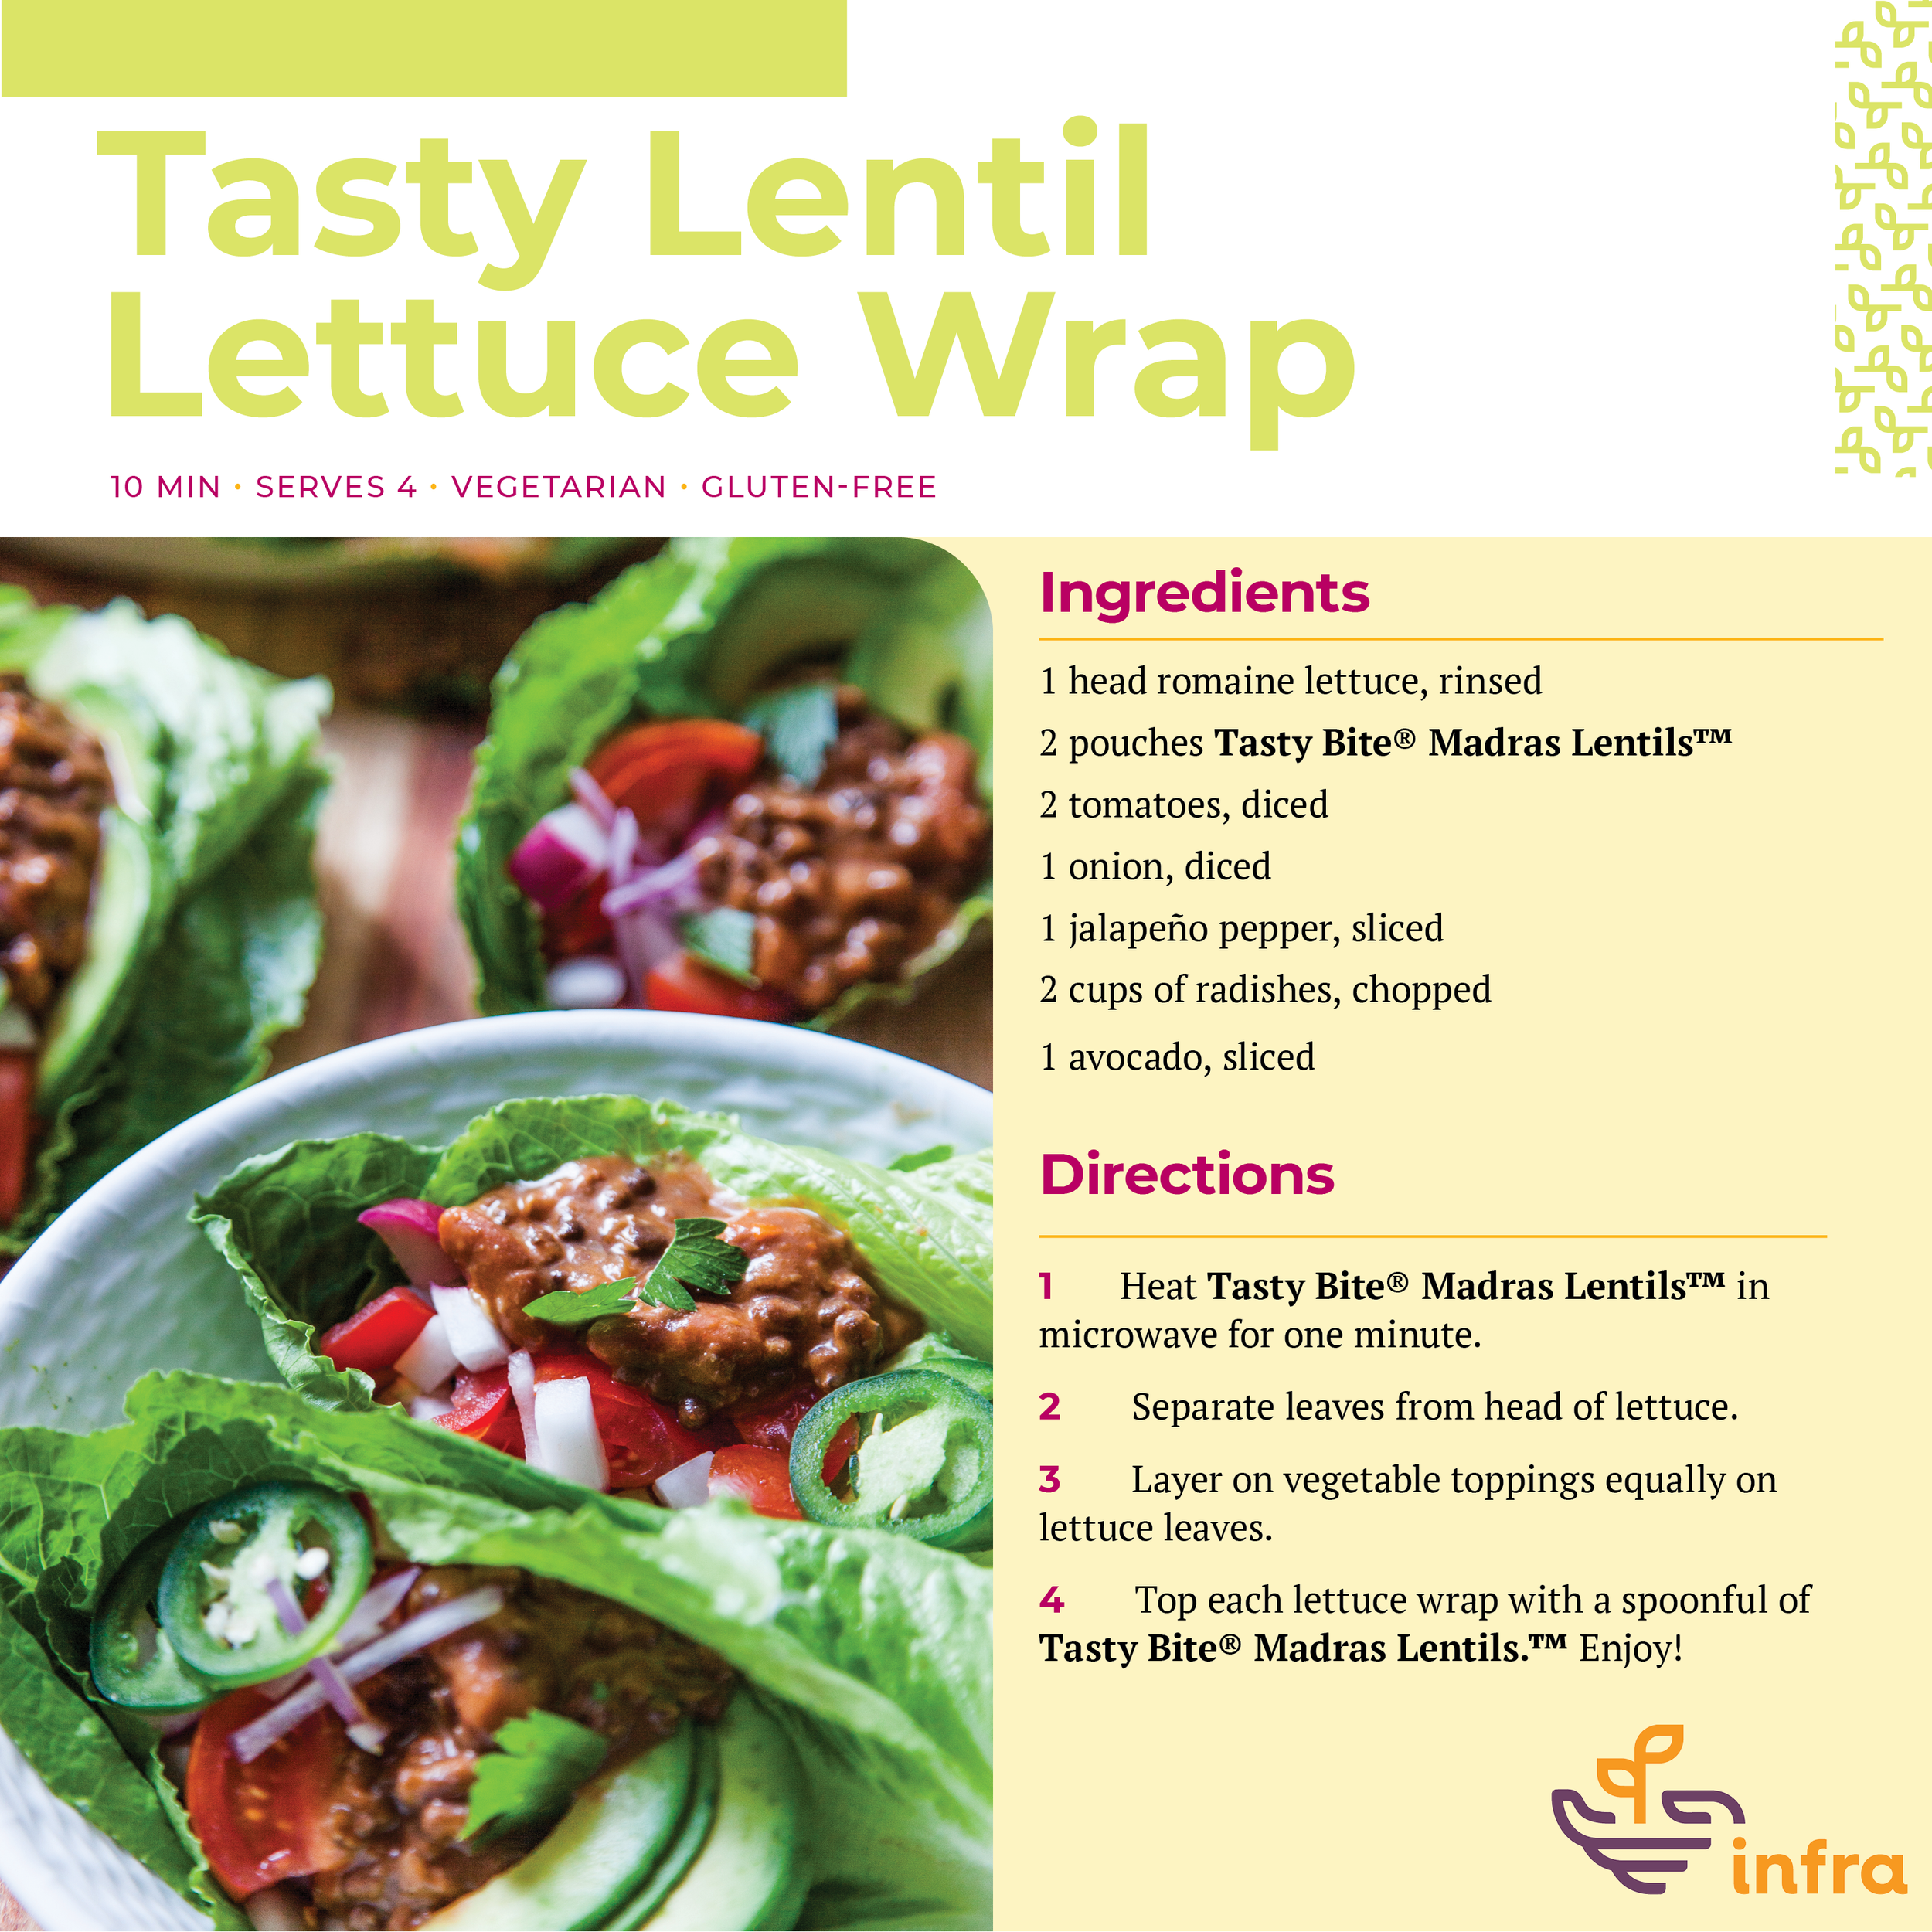 Tasty Lentil Lettuce Wrap Image and Recipe.png